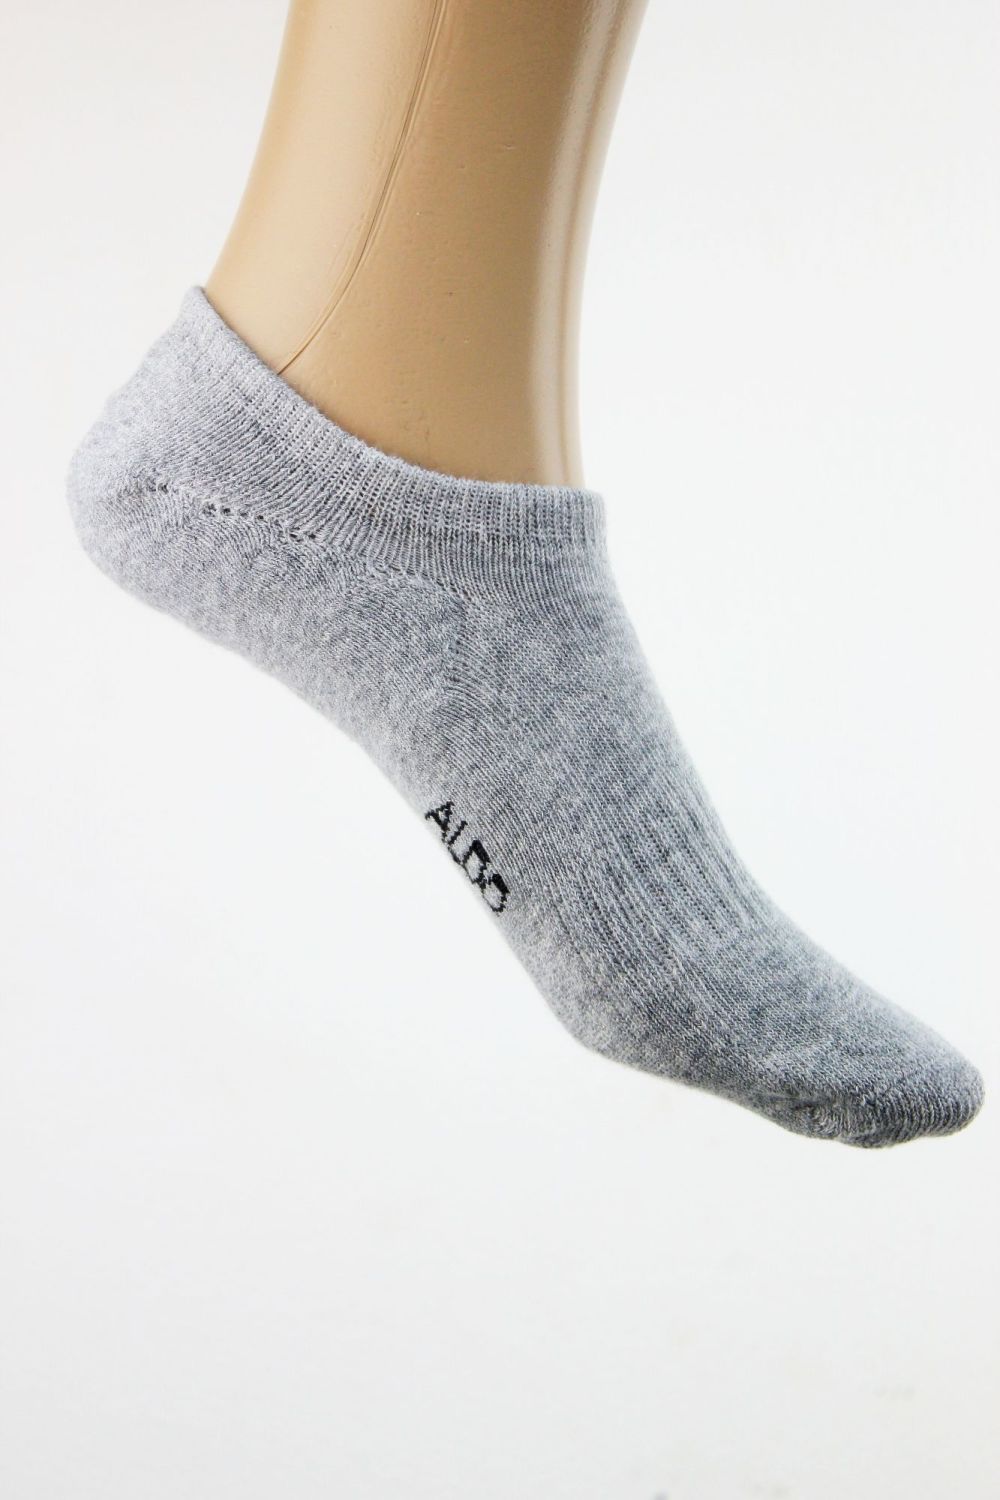 Aldo Gray No Show Socks Size: One Size